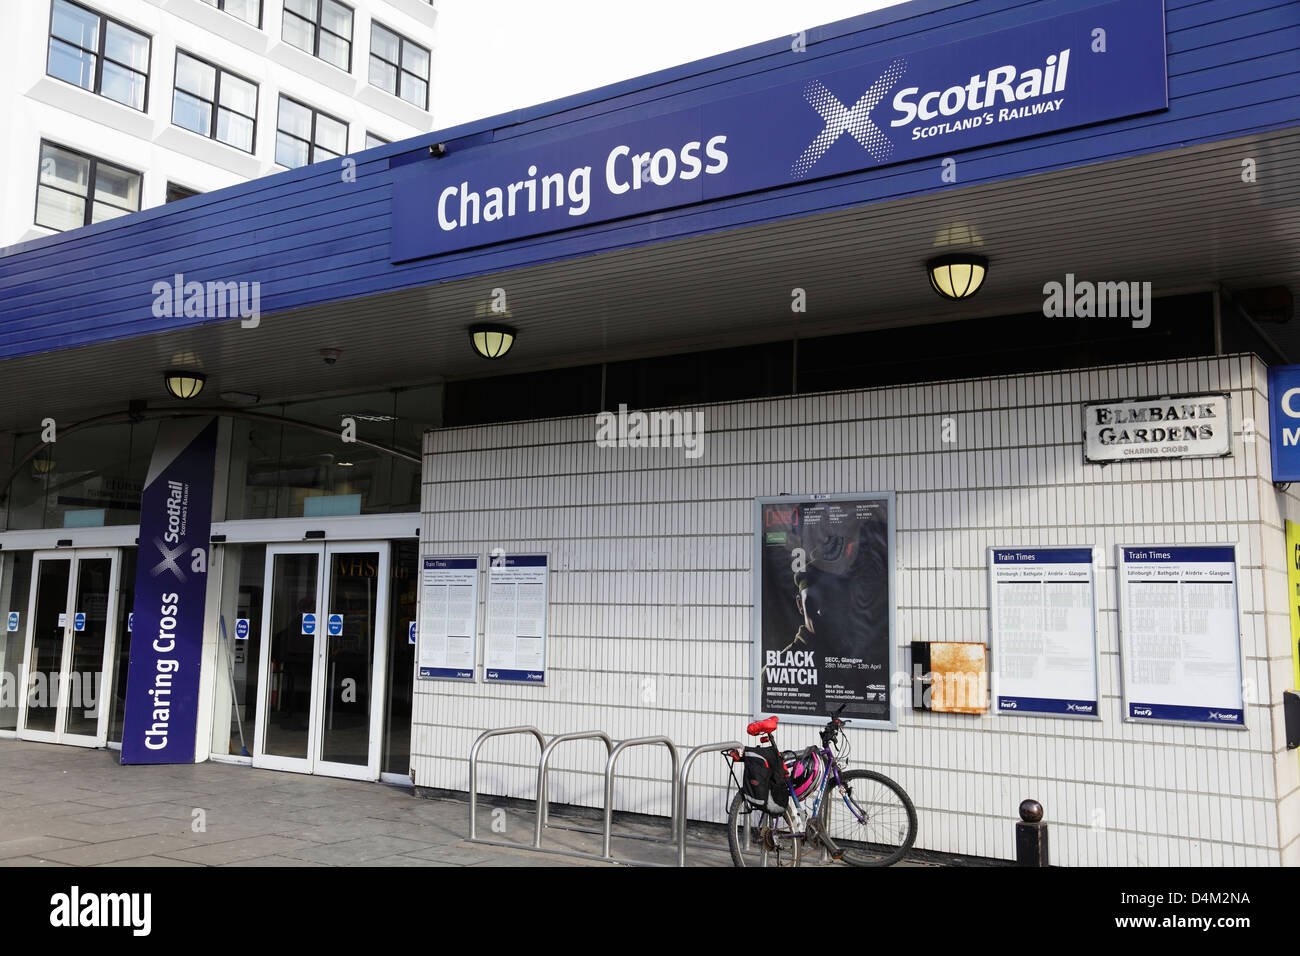 Entrée à la gare ferroviaire de Charing Cross ScotRail sur Elmbank Gardens dans le centre-ville de Glasgow, Écosse, Royaume-Uni Banque D'Images